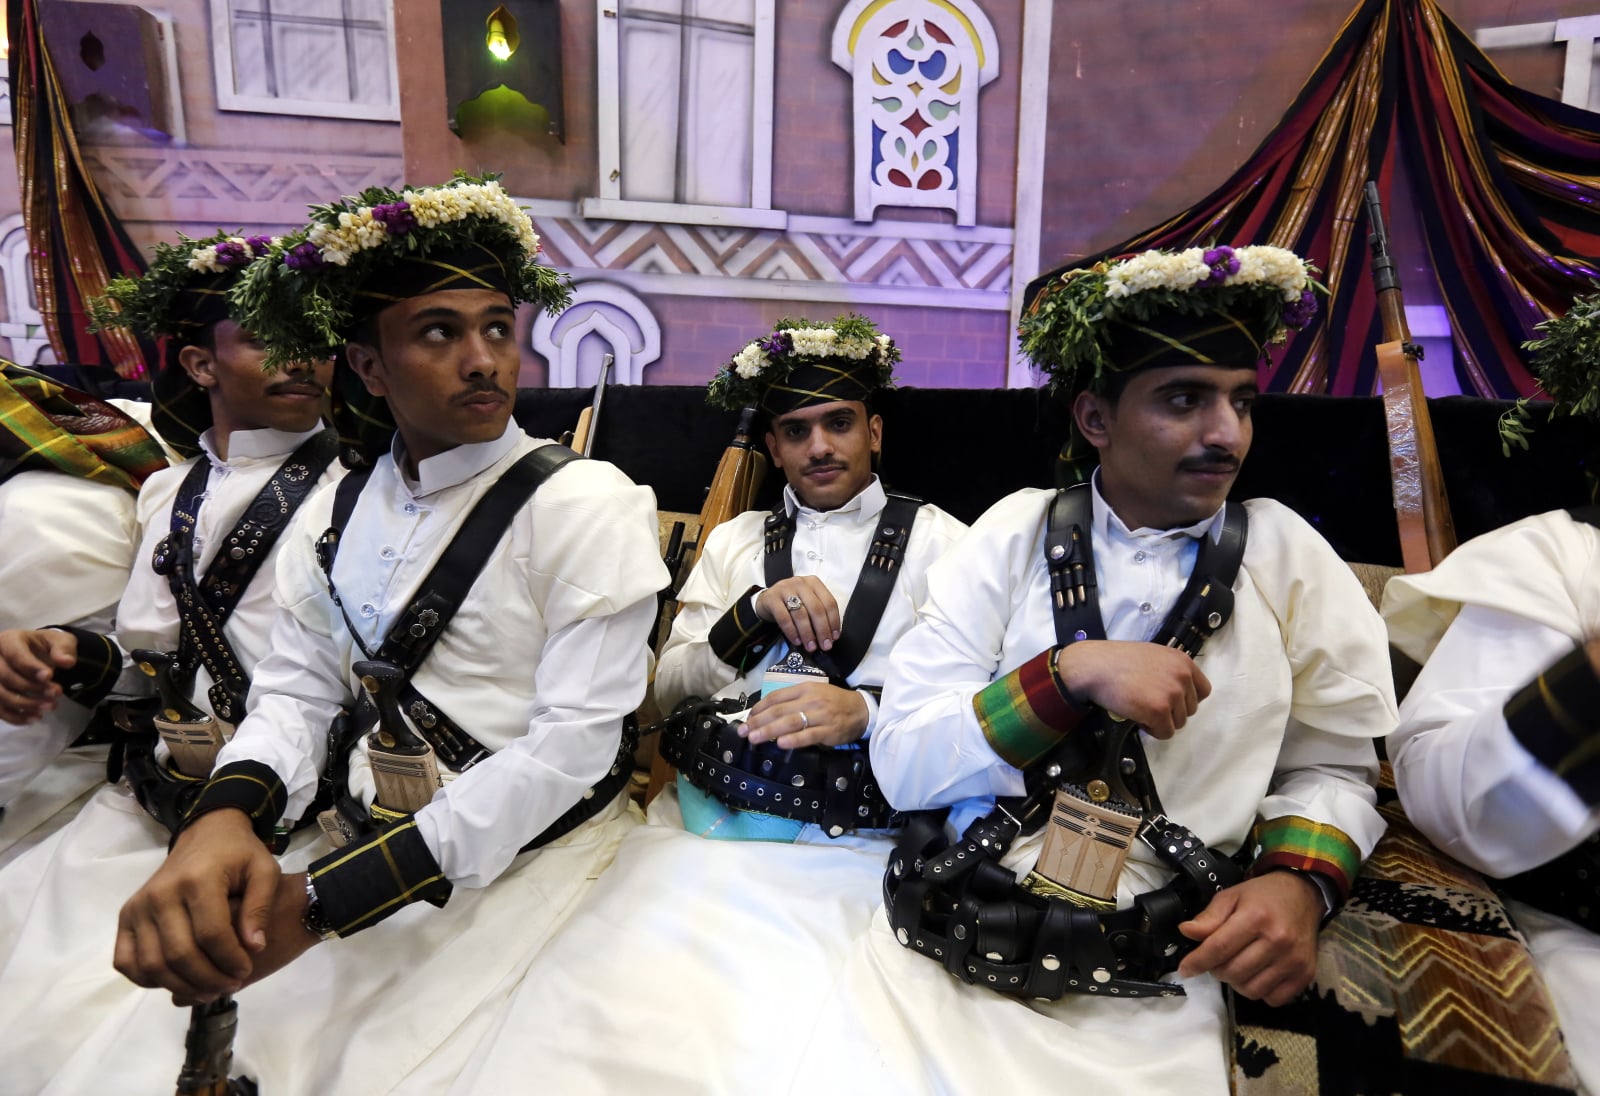 Tradycyjny ślub w Jemenie fot. EPA/YAHYA ARHAB 